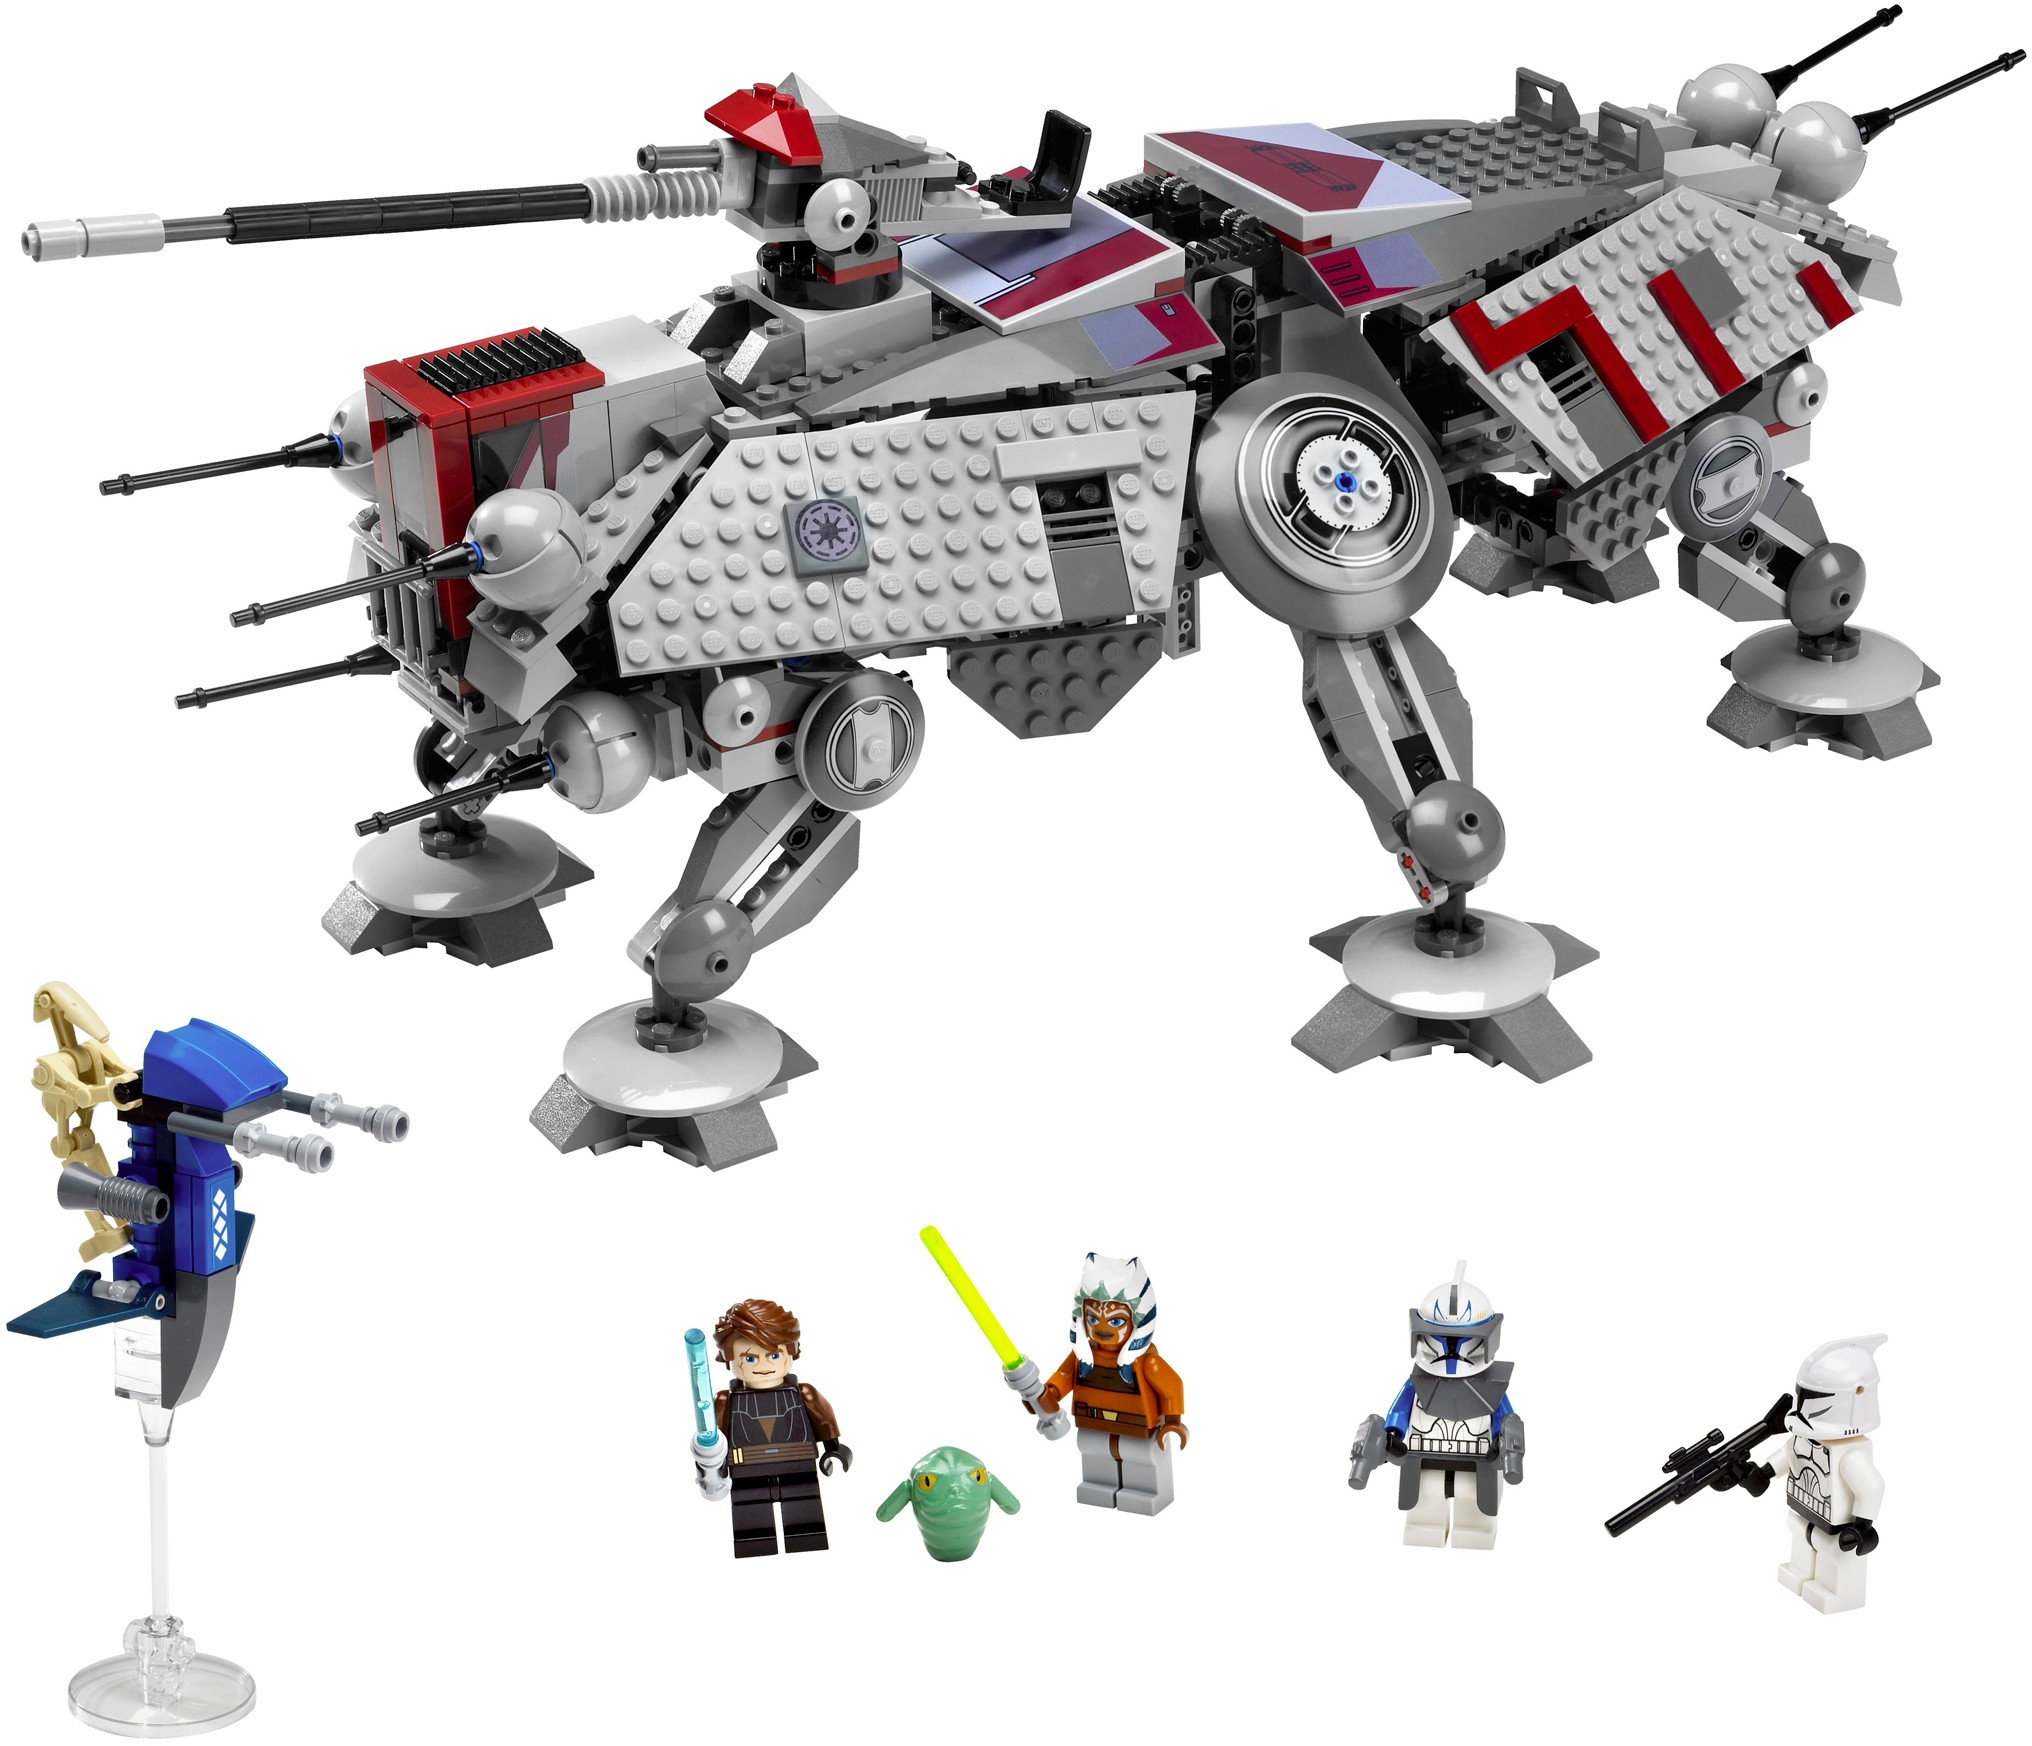 ale eskortere Slumkvarter Lego 7675 AT-TE Walker - Lego Star Wars set for sale best price